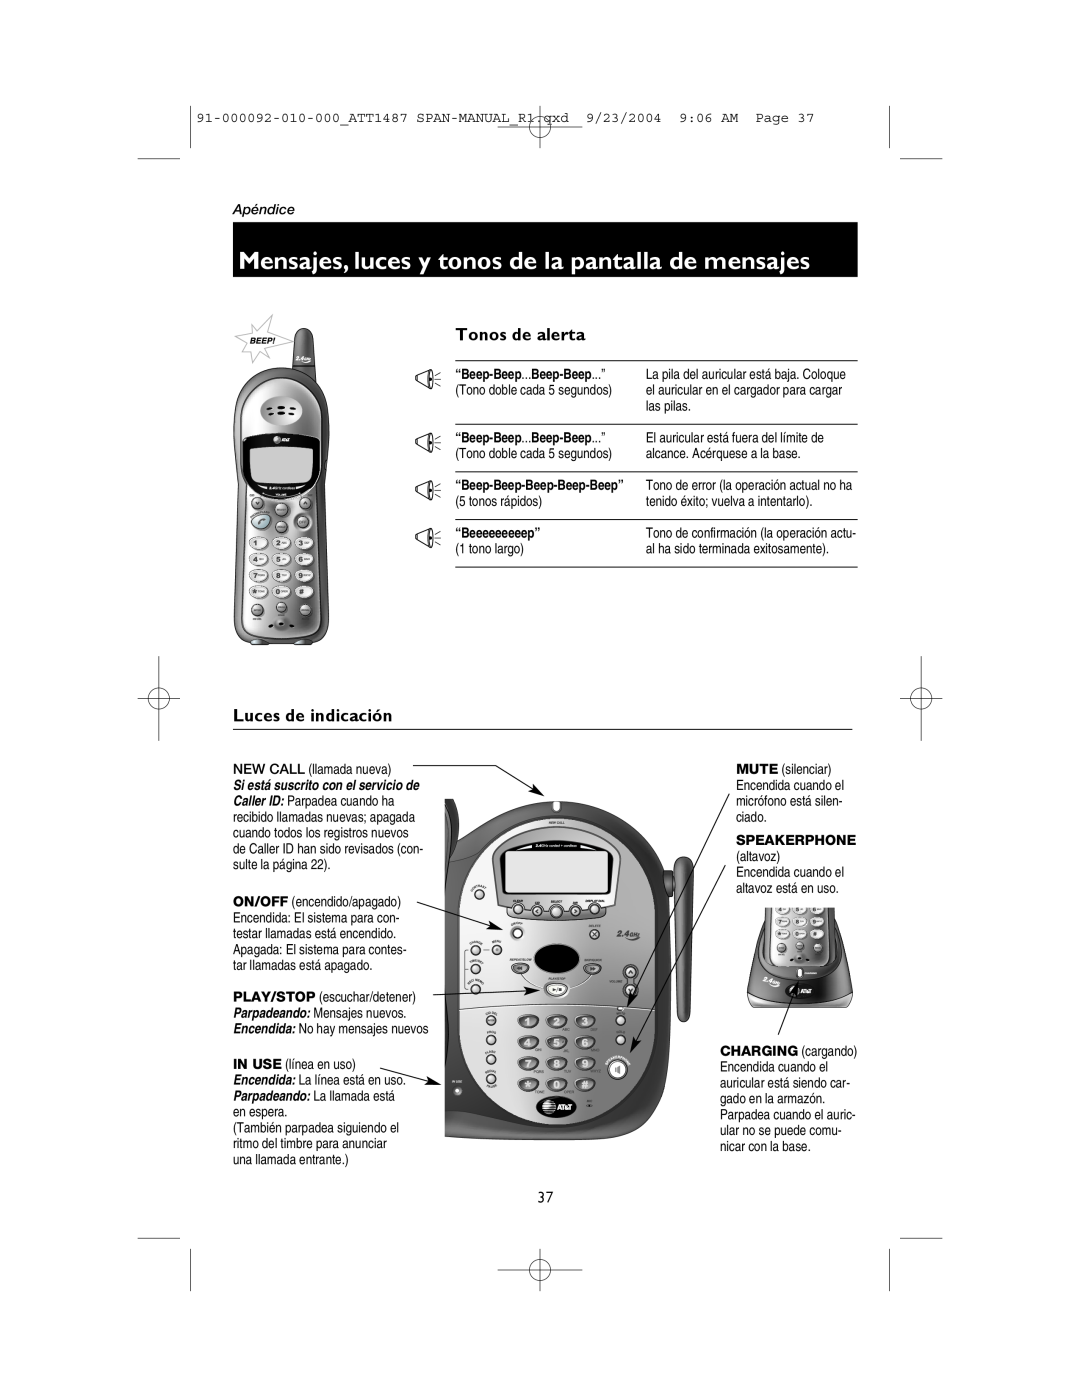 AT&T 1187 Tonos de alerta, Luces de indicación, Mensajes, luces y tonos de la pantalla de mensajes, Apéndice, las pilas 